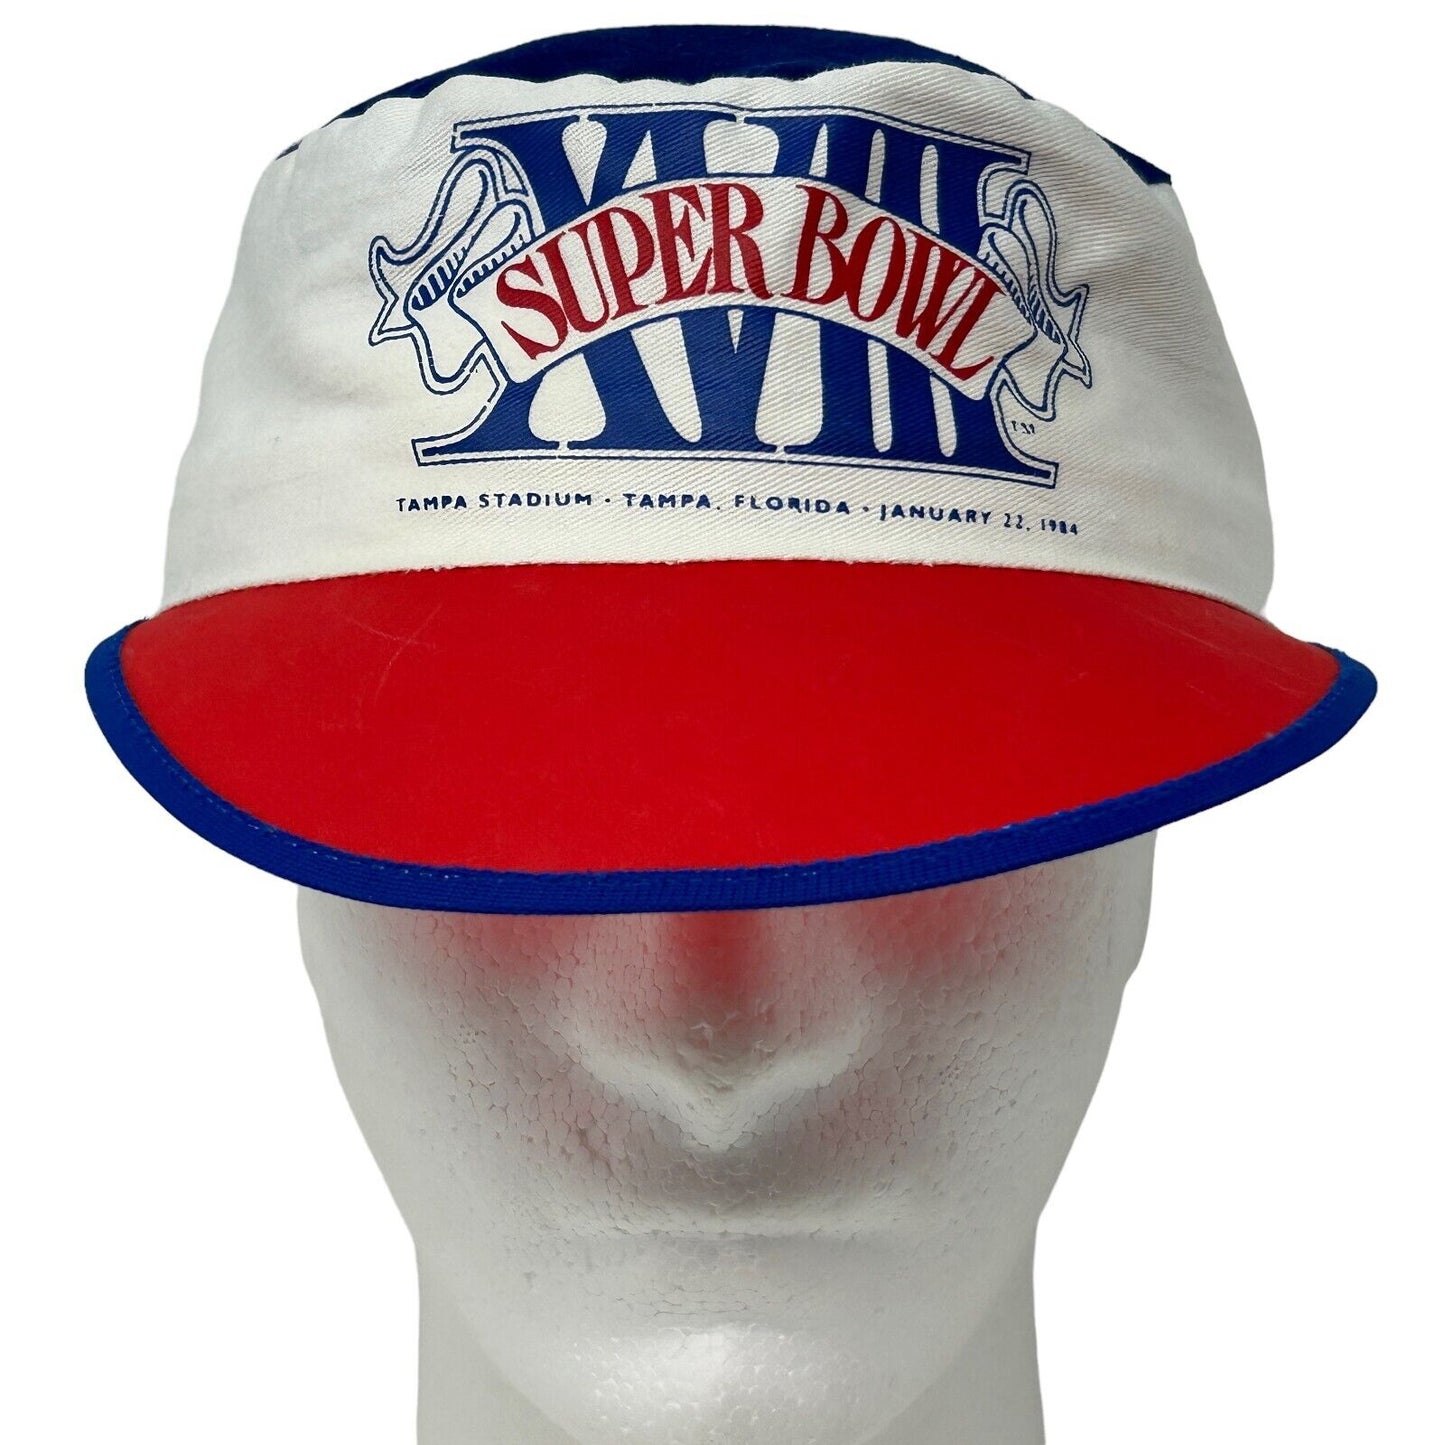 Super Bowl XVIII Painters Hat Blue Vintage 80s NFL Football Raiders Baseball Cap